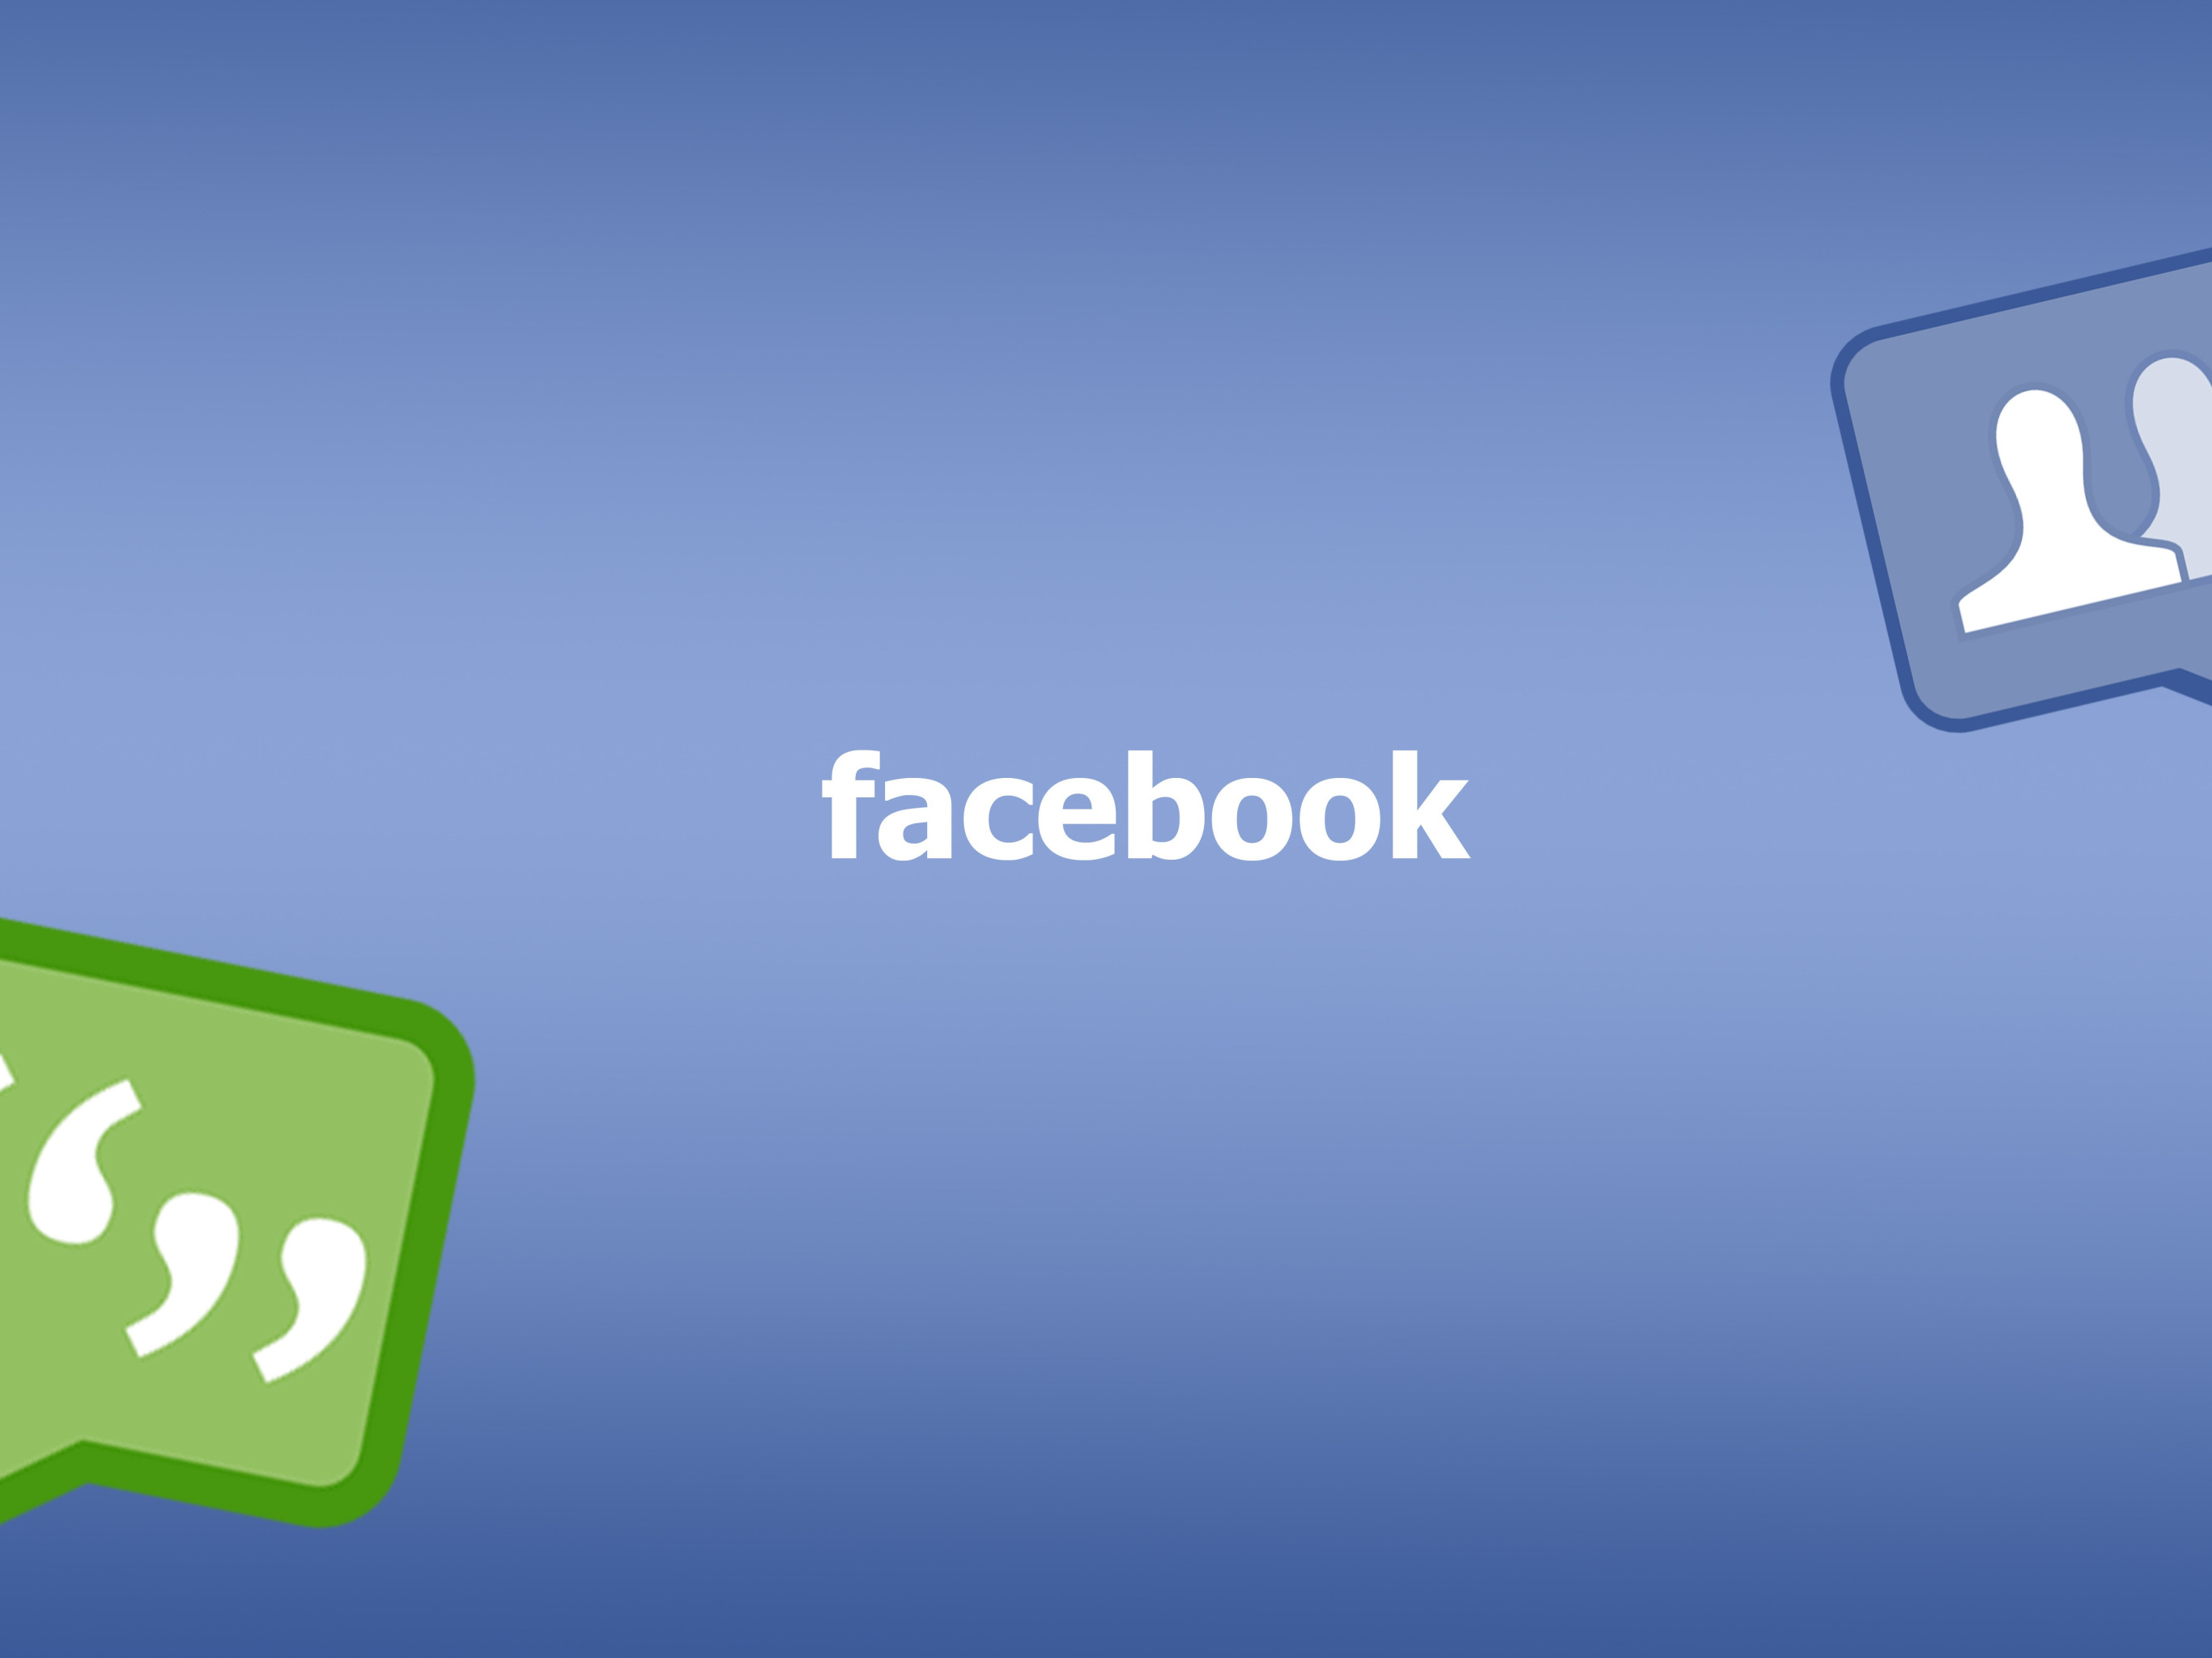 Facebook, social network, Mark Zuckenberg